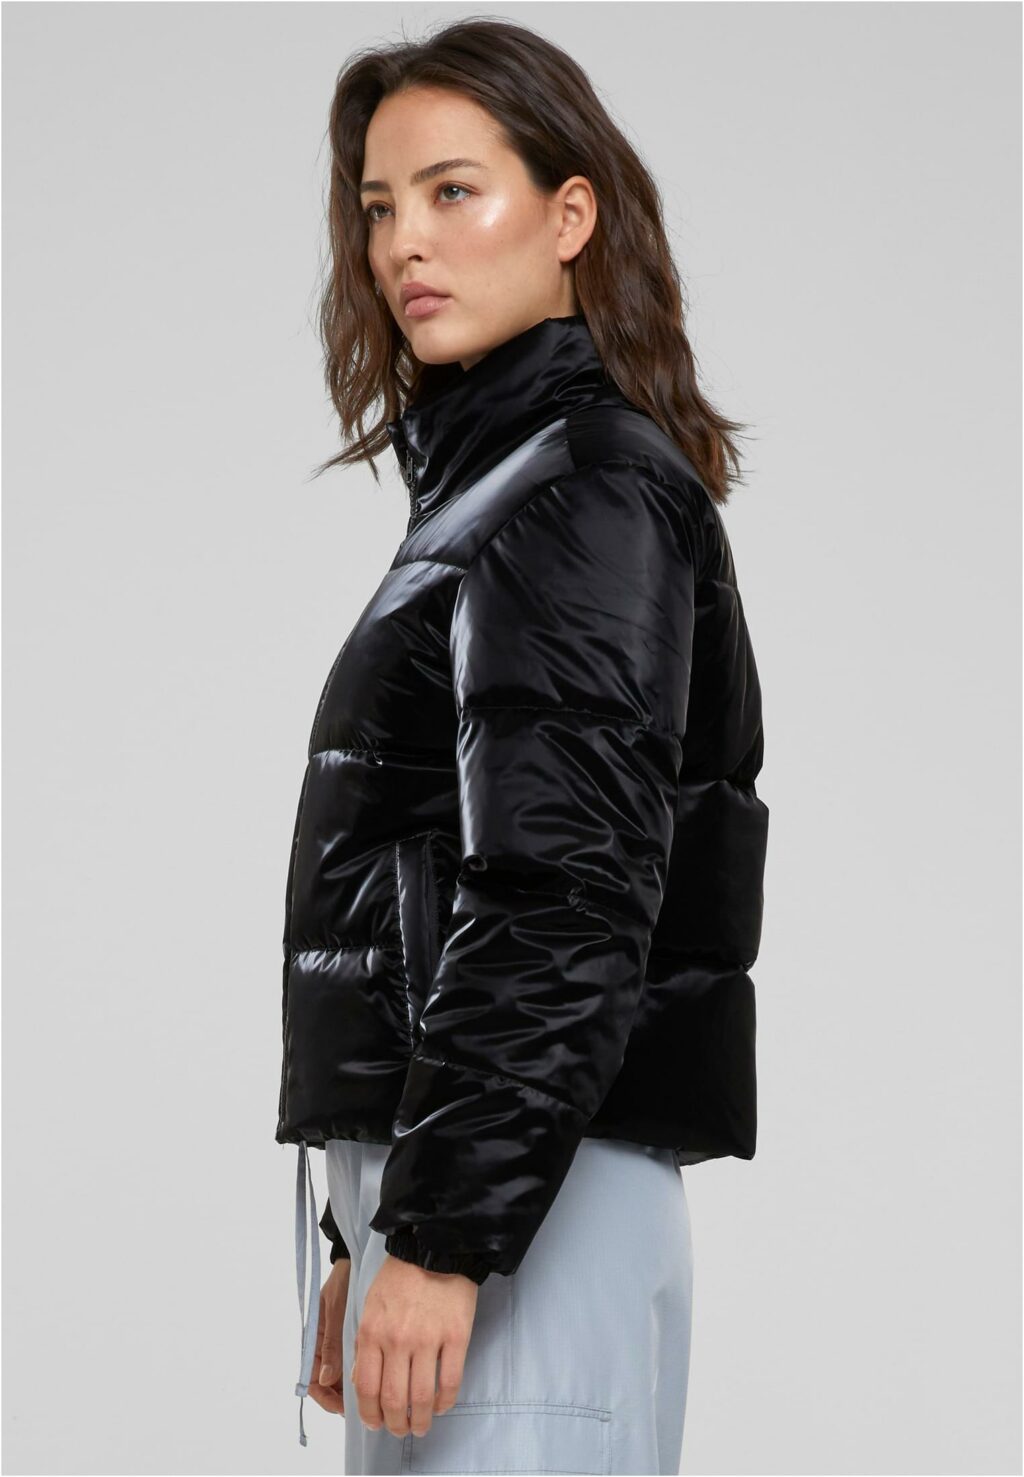 Urban Classics Ladies Shark Skin Puffer Jacket black TB6146